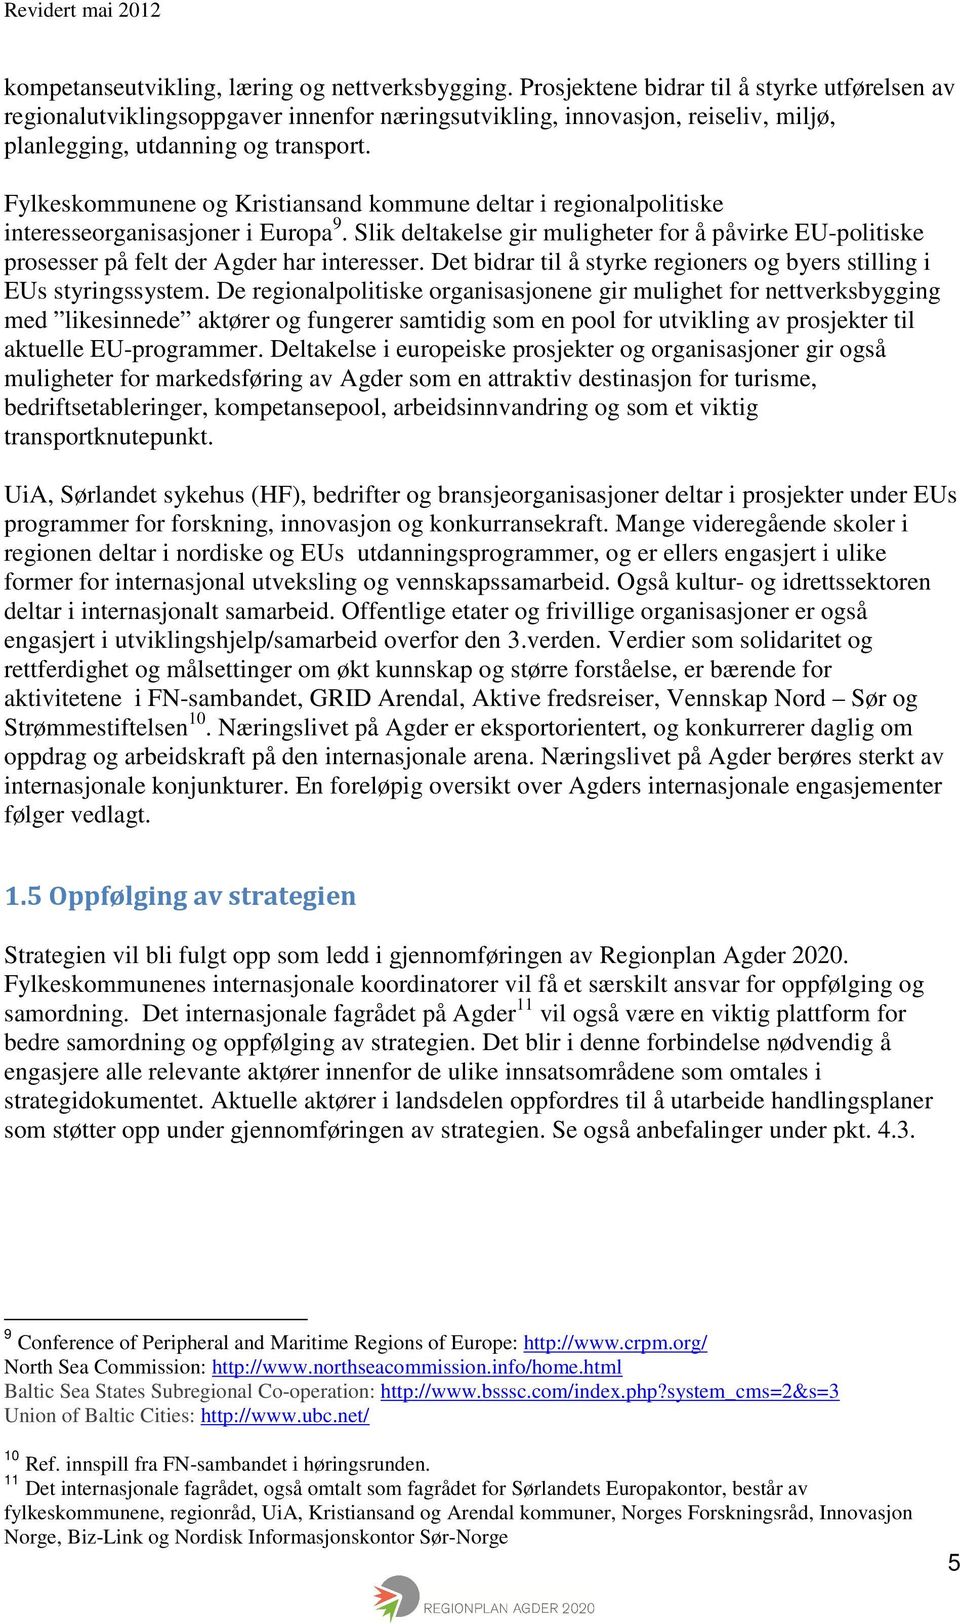 Fylkeskommunene og Kristiansand kommune deltar i regionalpolitiske interesseorganisasjoner i Europa 9.